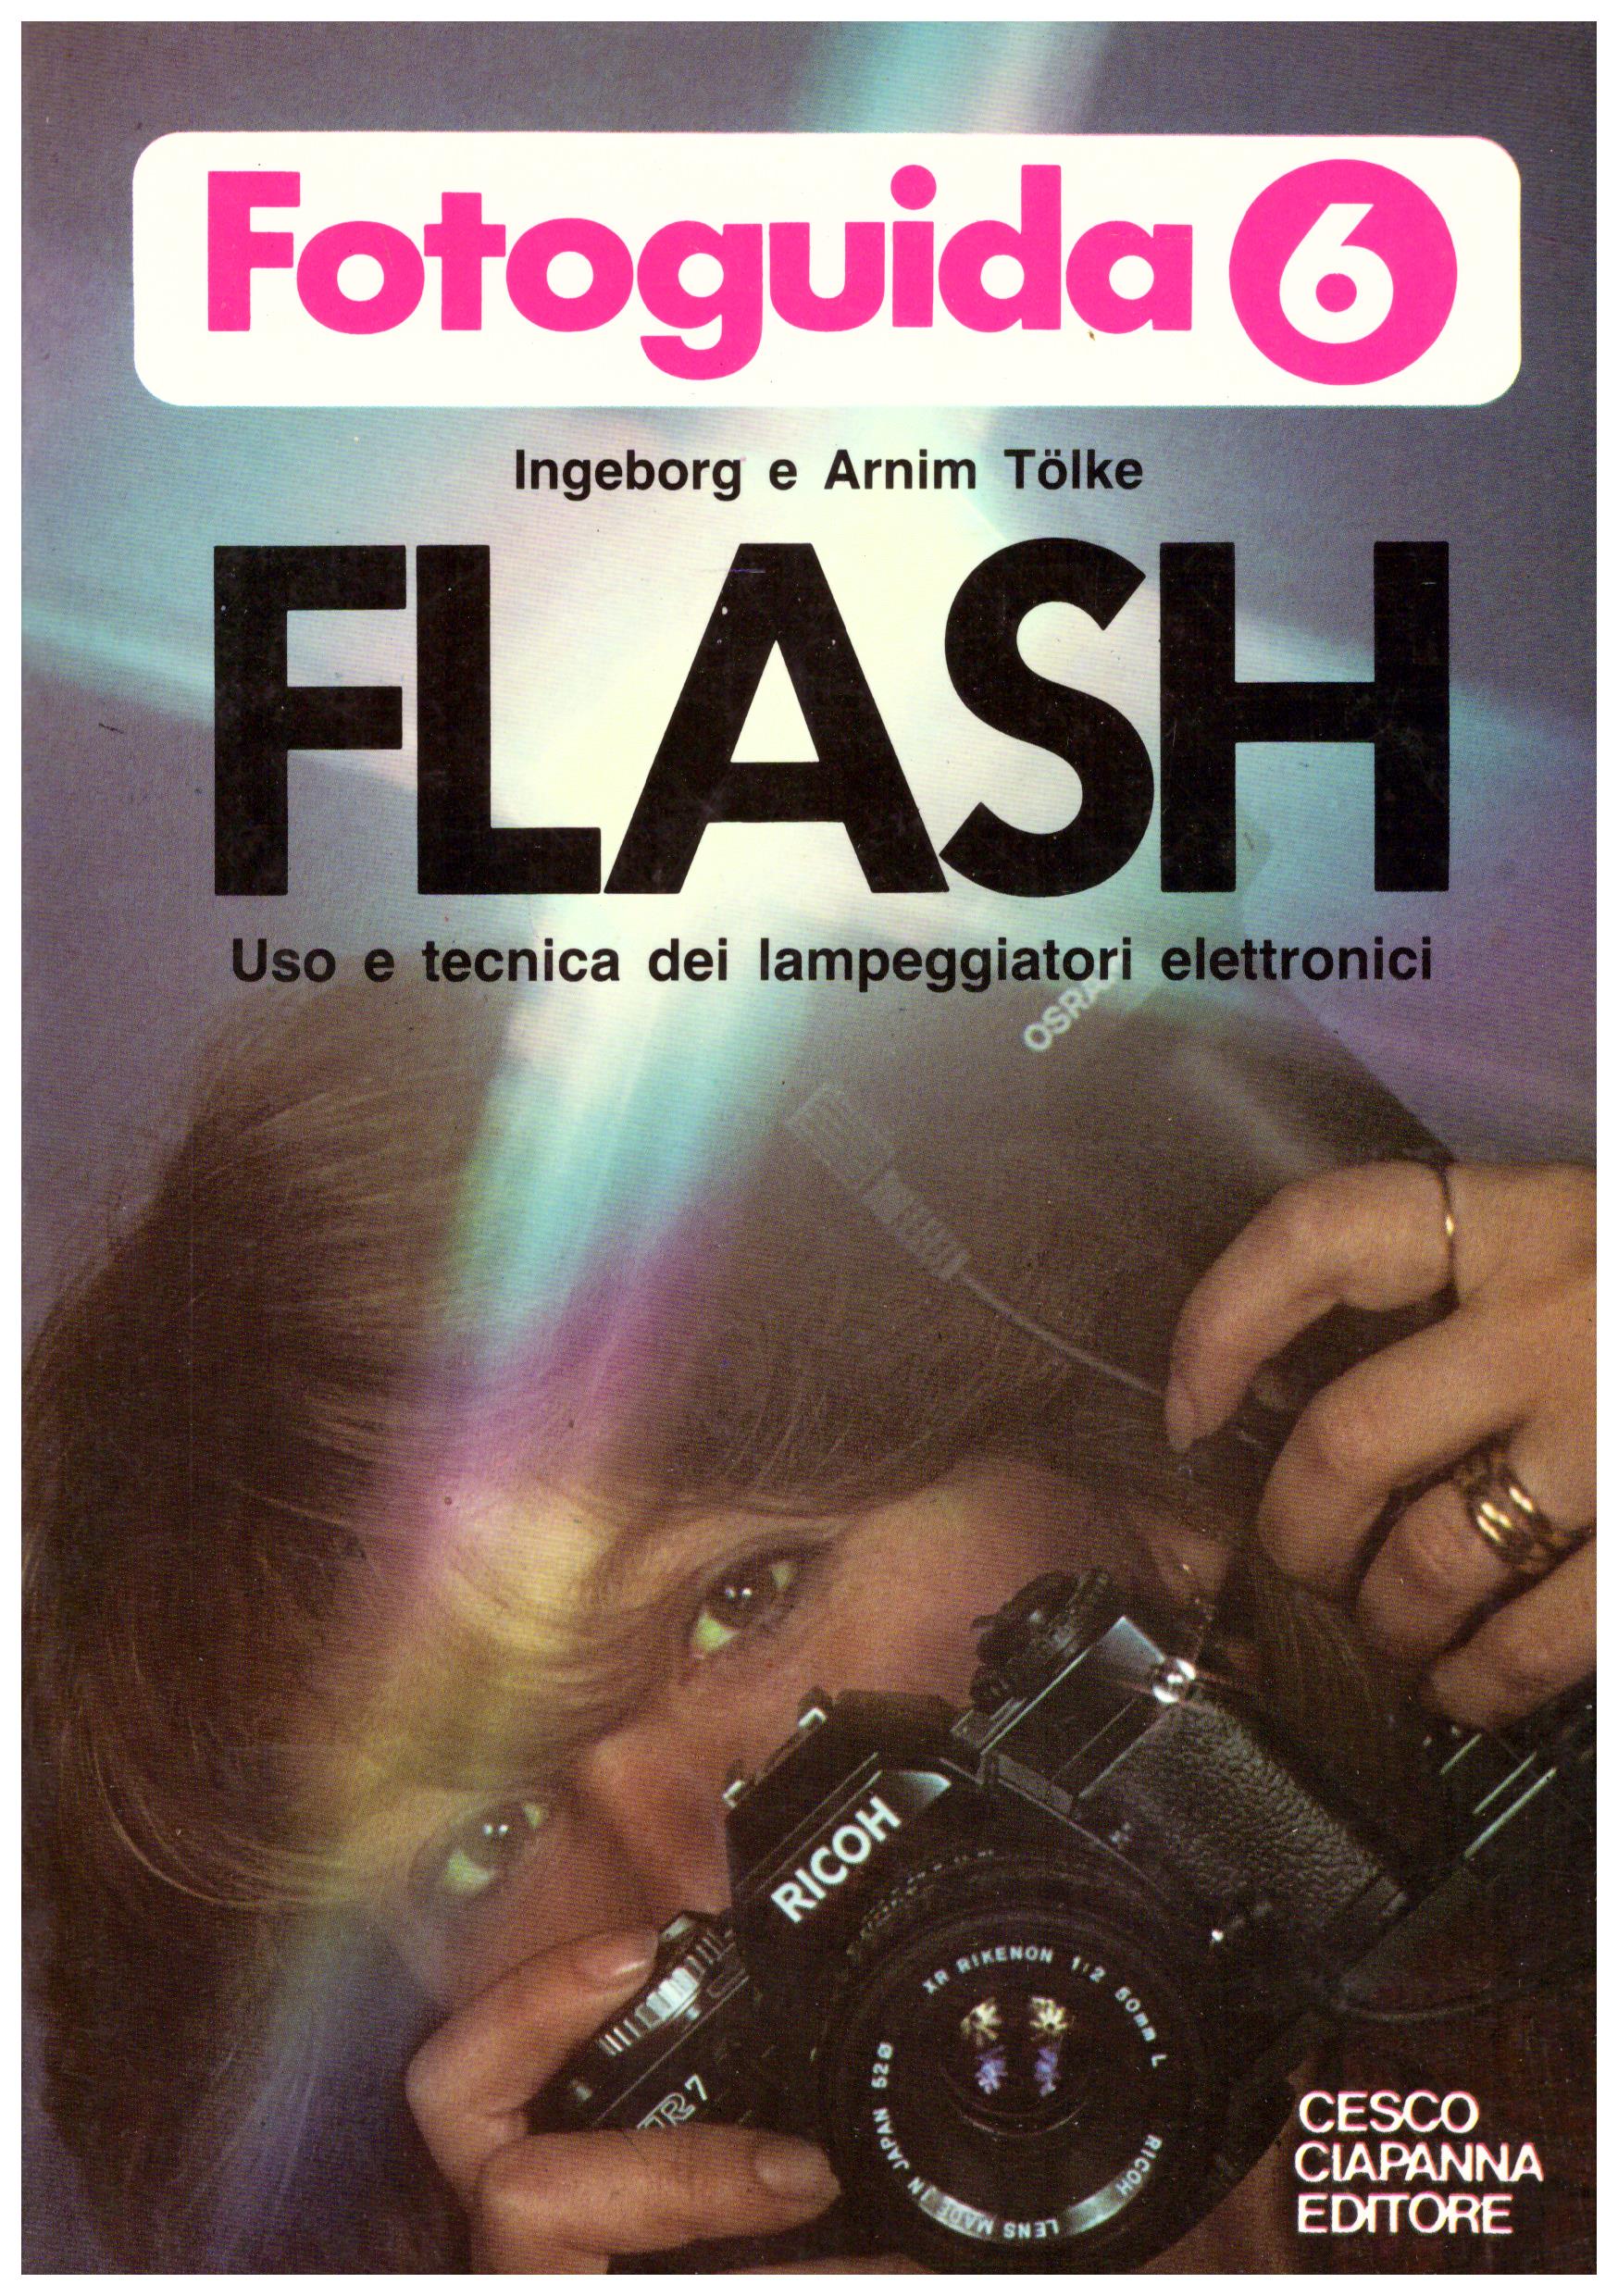 Titolo: Fotoguida 6, Flash uso e tecnica dei lampeggiatori elettronici Autore: Ingeborg e Arnim Tolke Editore: Cesco Ciapanna 1980